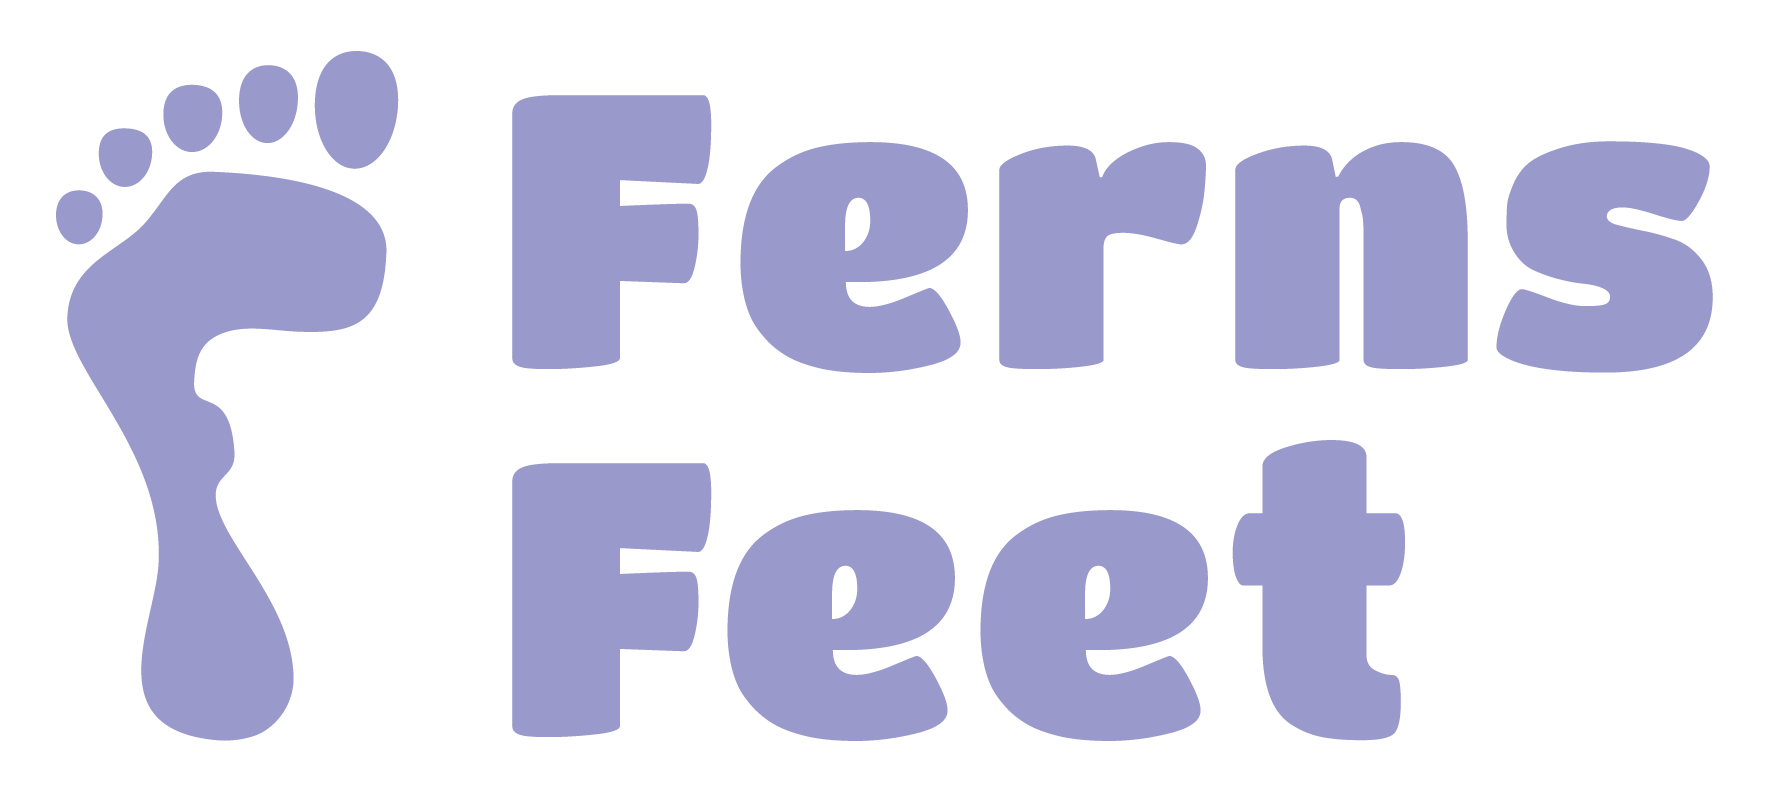 Feet – Ferns Feet